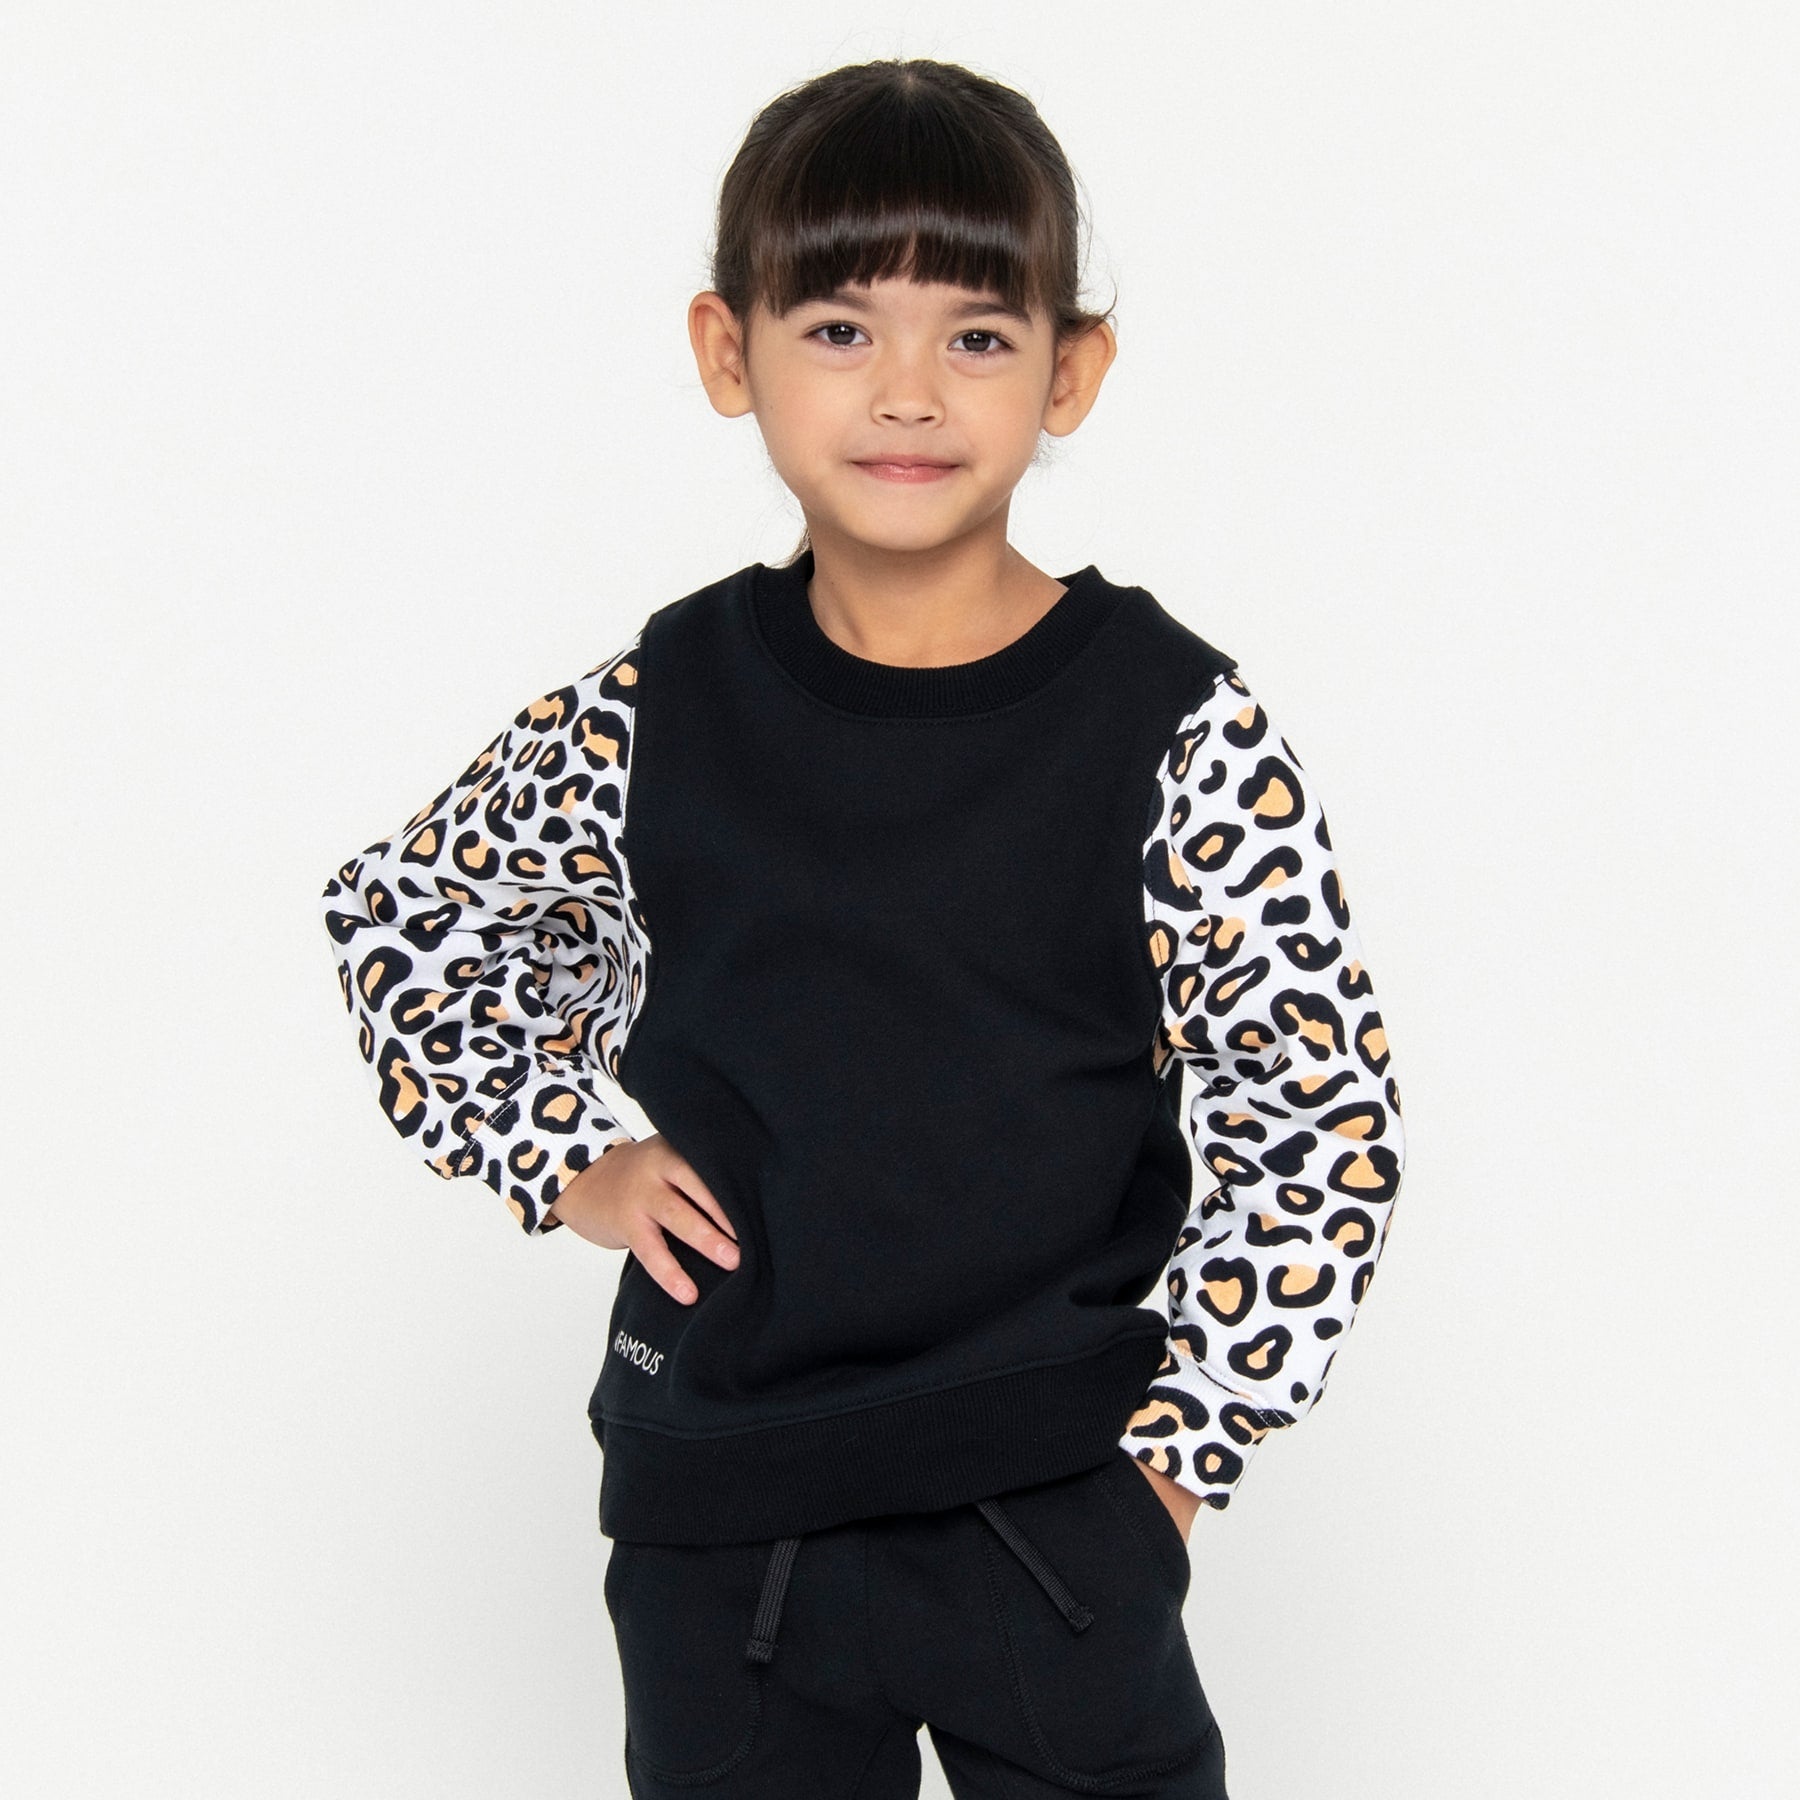 Mini Squared Up Sweatshirt Final Sale - Black & Leopard